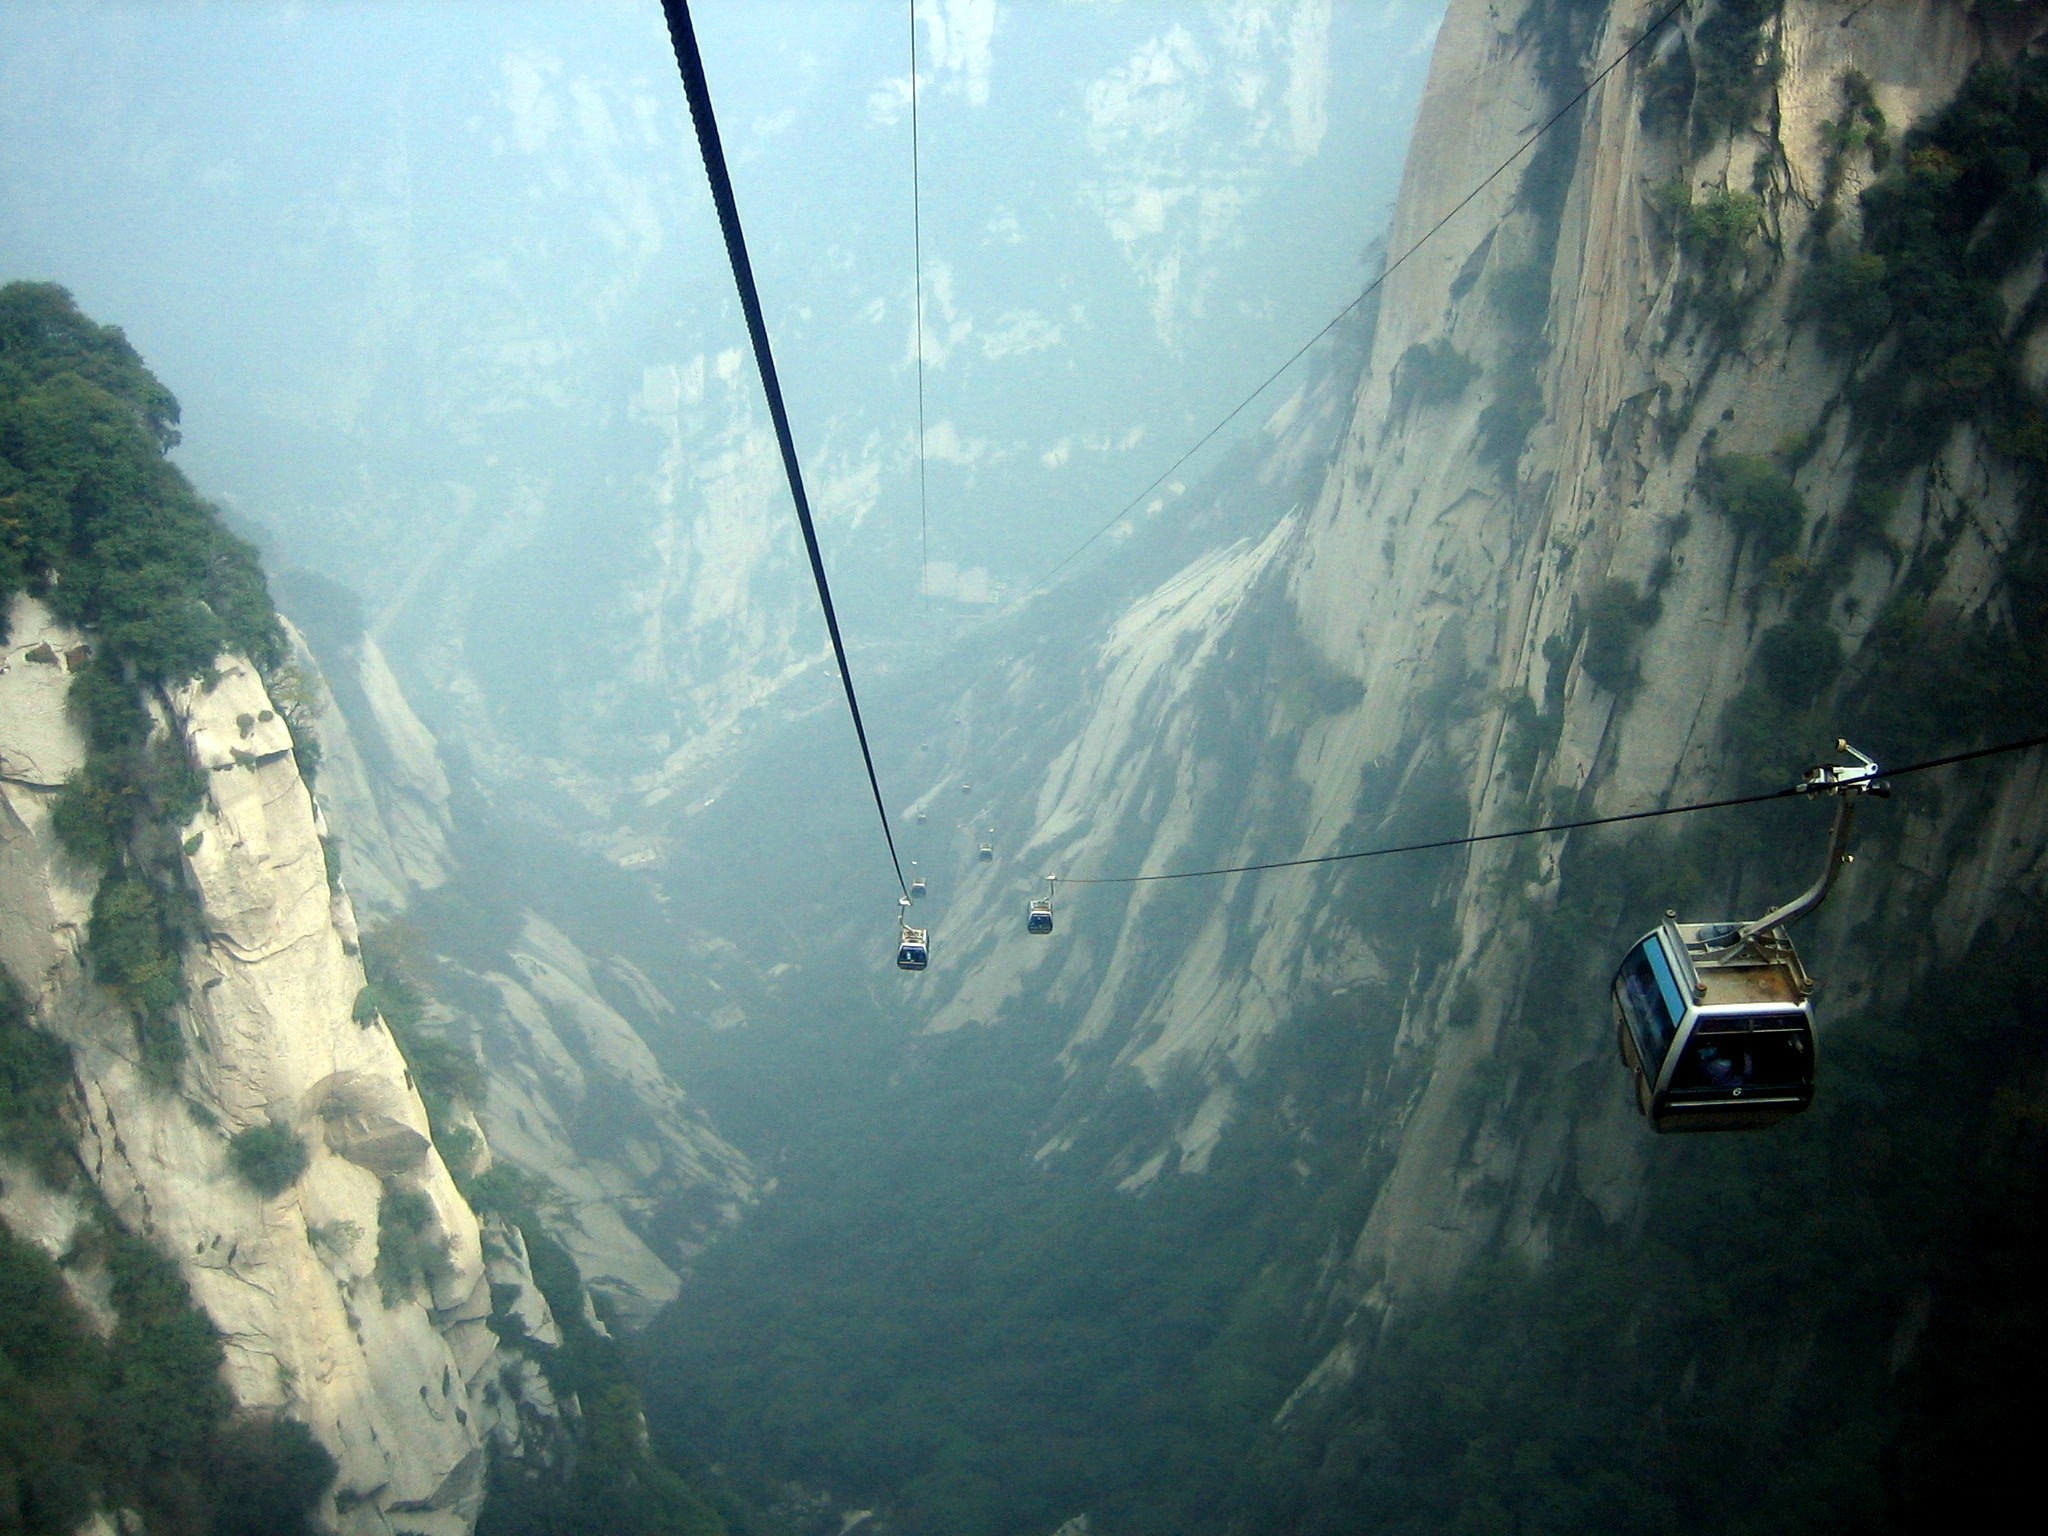 Mt. Huashan, China Cable Ride